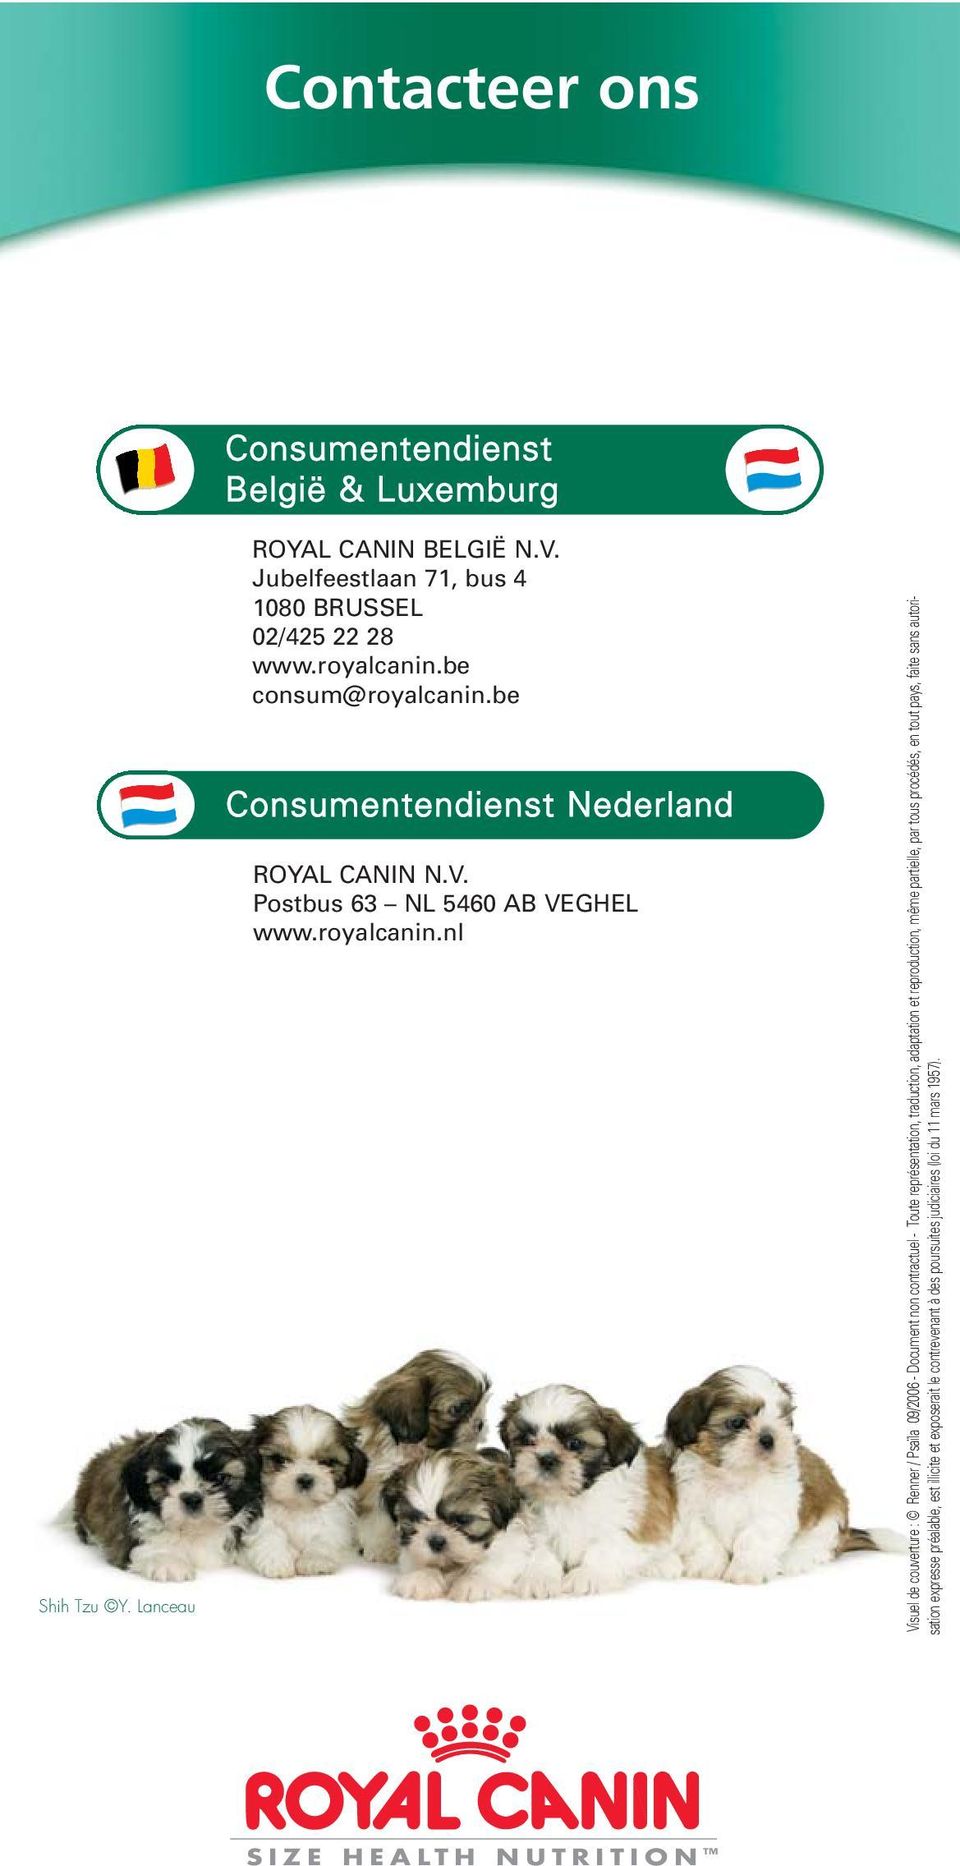 be consum@be Consumentendienst Nederland ROYAL CANIN N.V. Postbus 63 NL 5460 AB VEGHEL www.